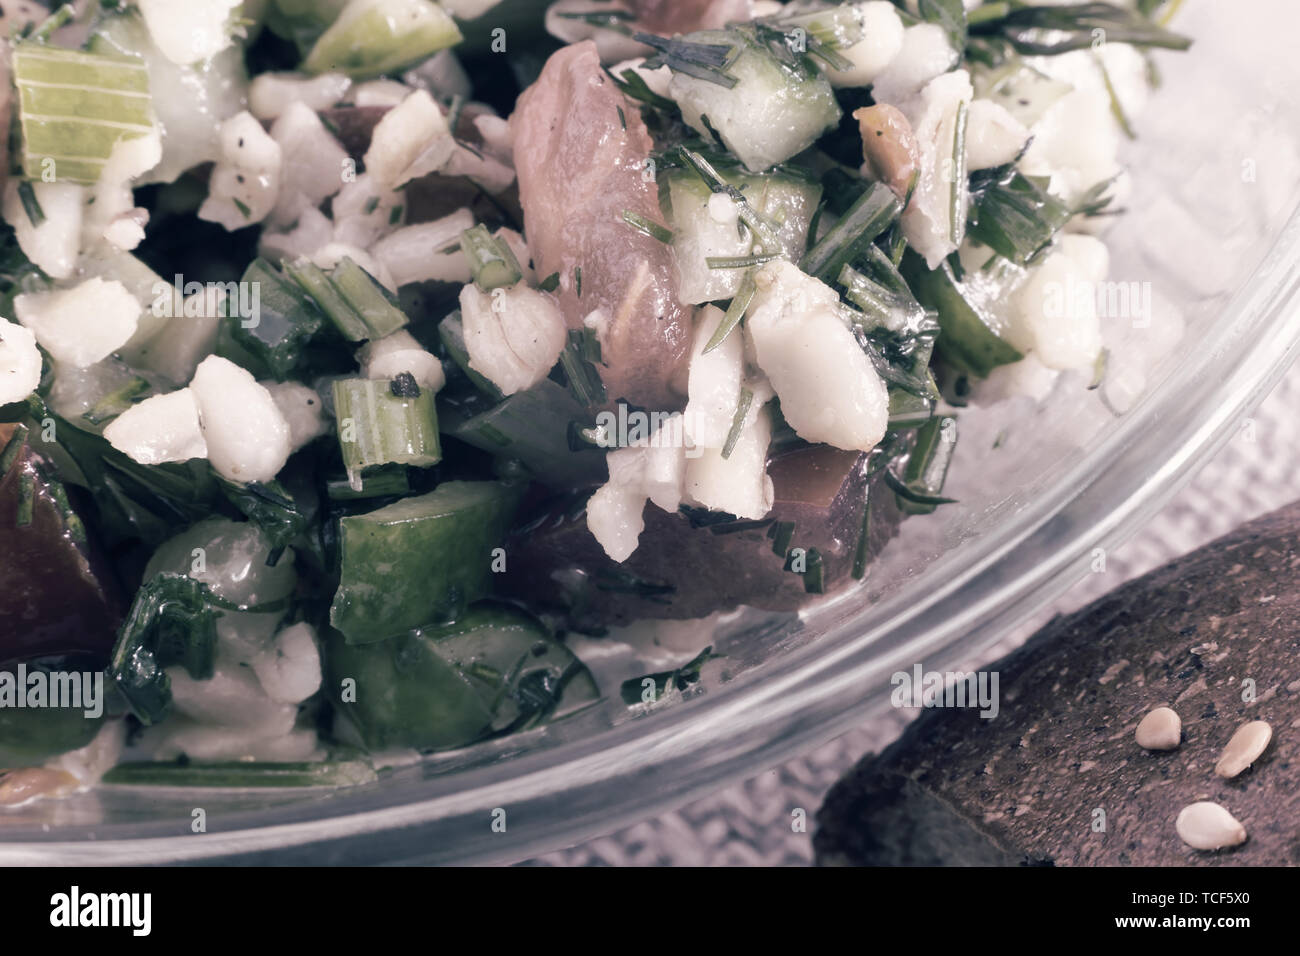 Salat Tabule - ein gemeinsames Gericht der arabischen Küche. Stockfoto